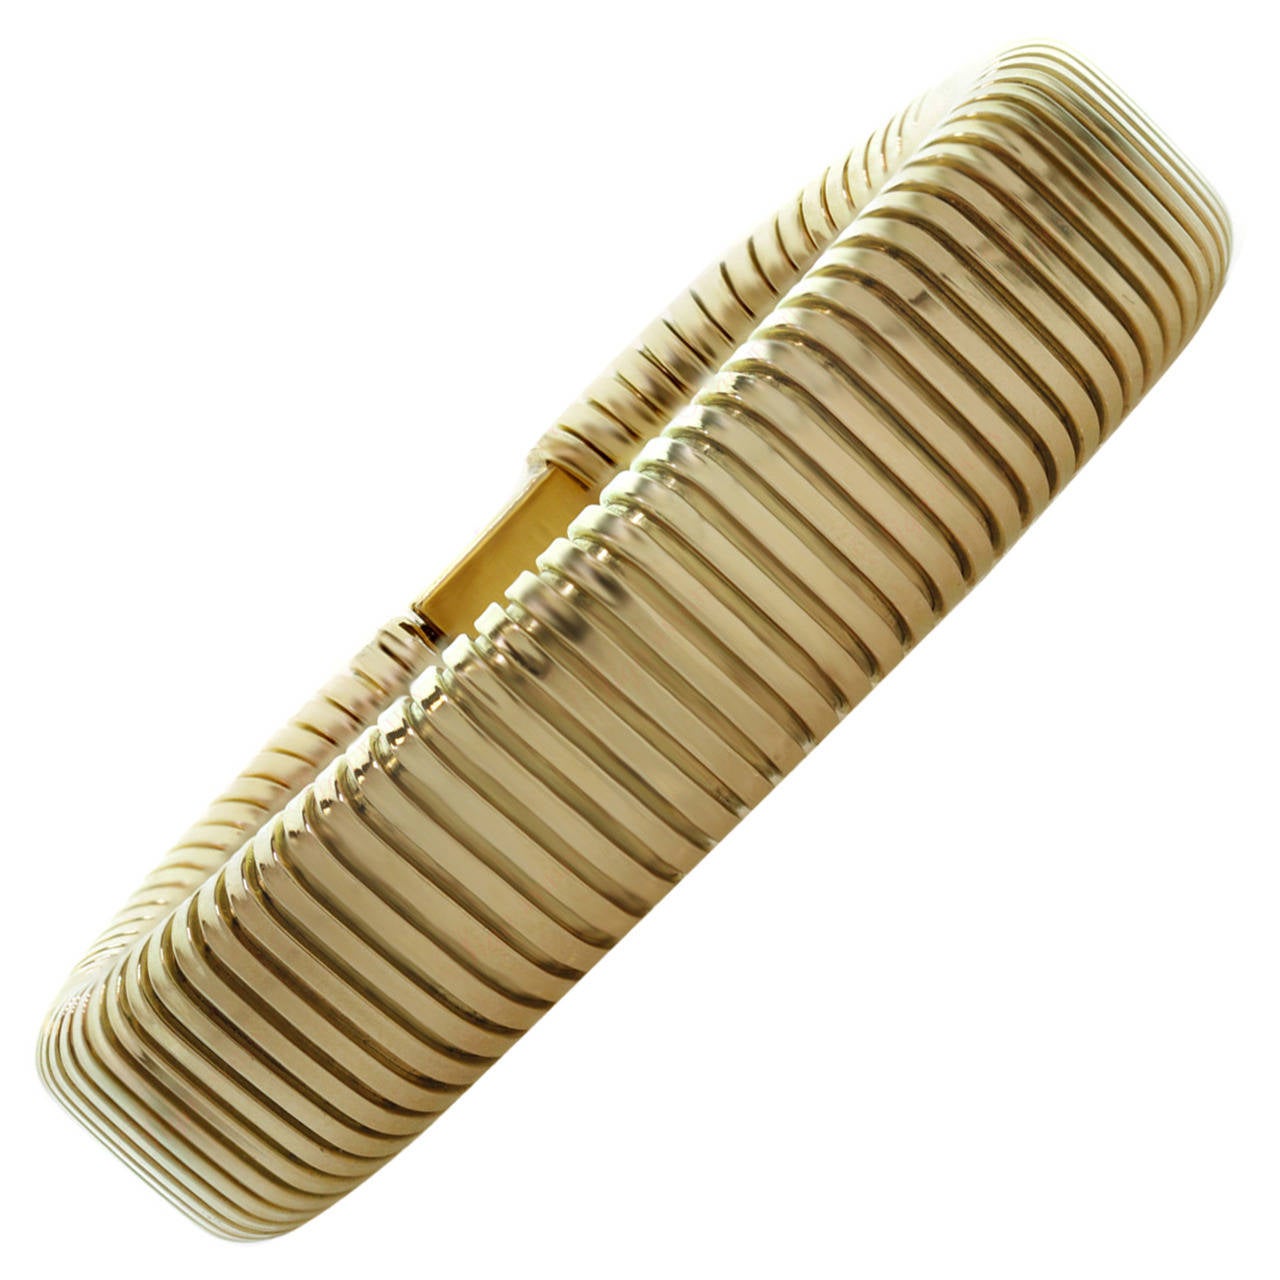 1940s Flexible Gold Snake Bracelet at 1stdibs